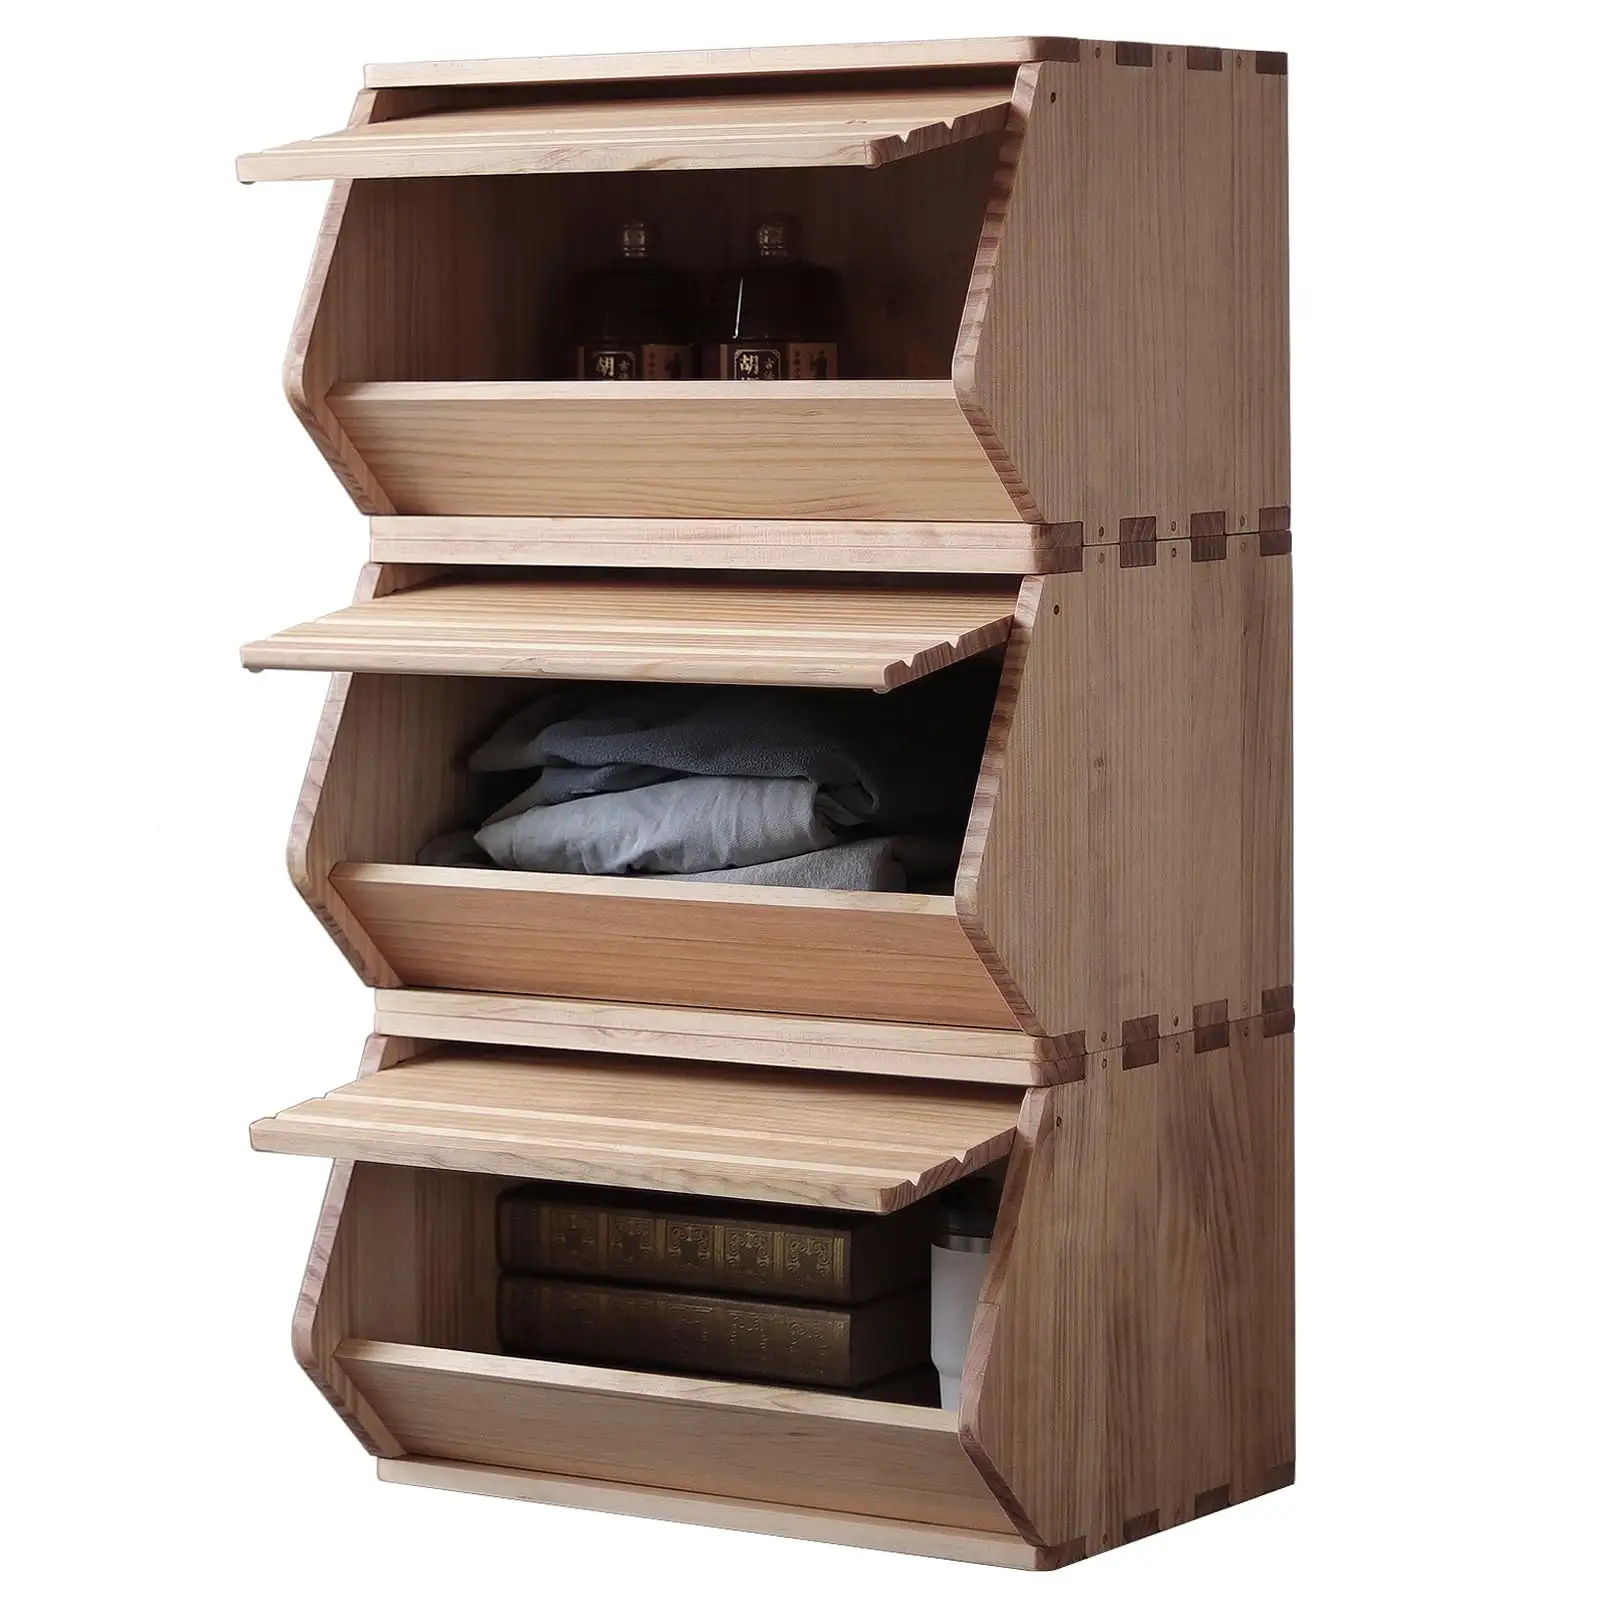 Erbstück-Qualität Kiefer Massivholz-Aufbewahrungskiste mit Deckel stapelbar exquisite Handwerklichkeit innovatives Design Schlafzimmer Wohnzimmer